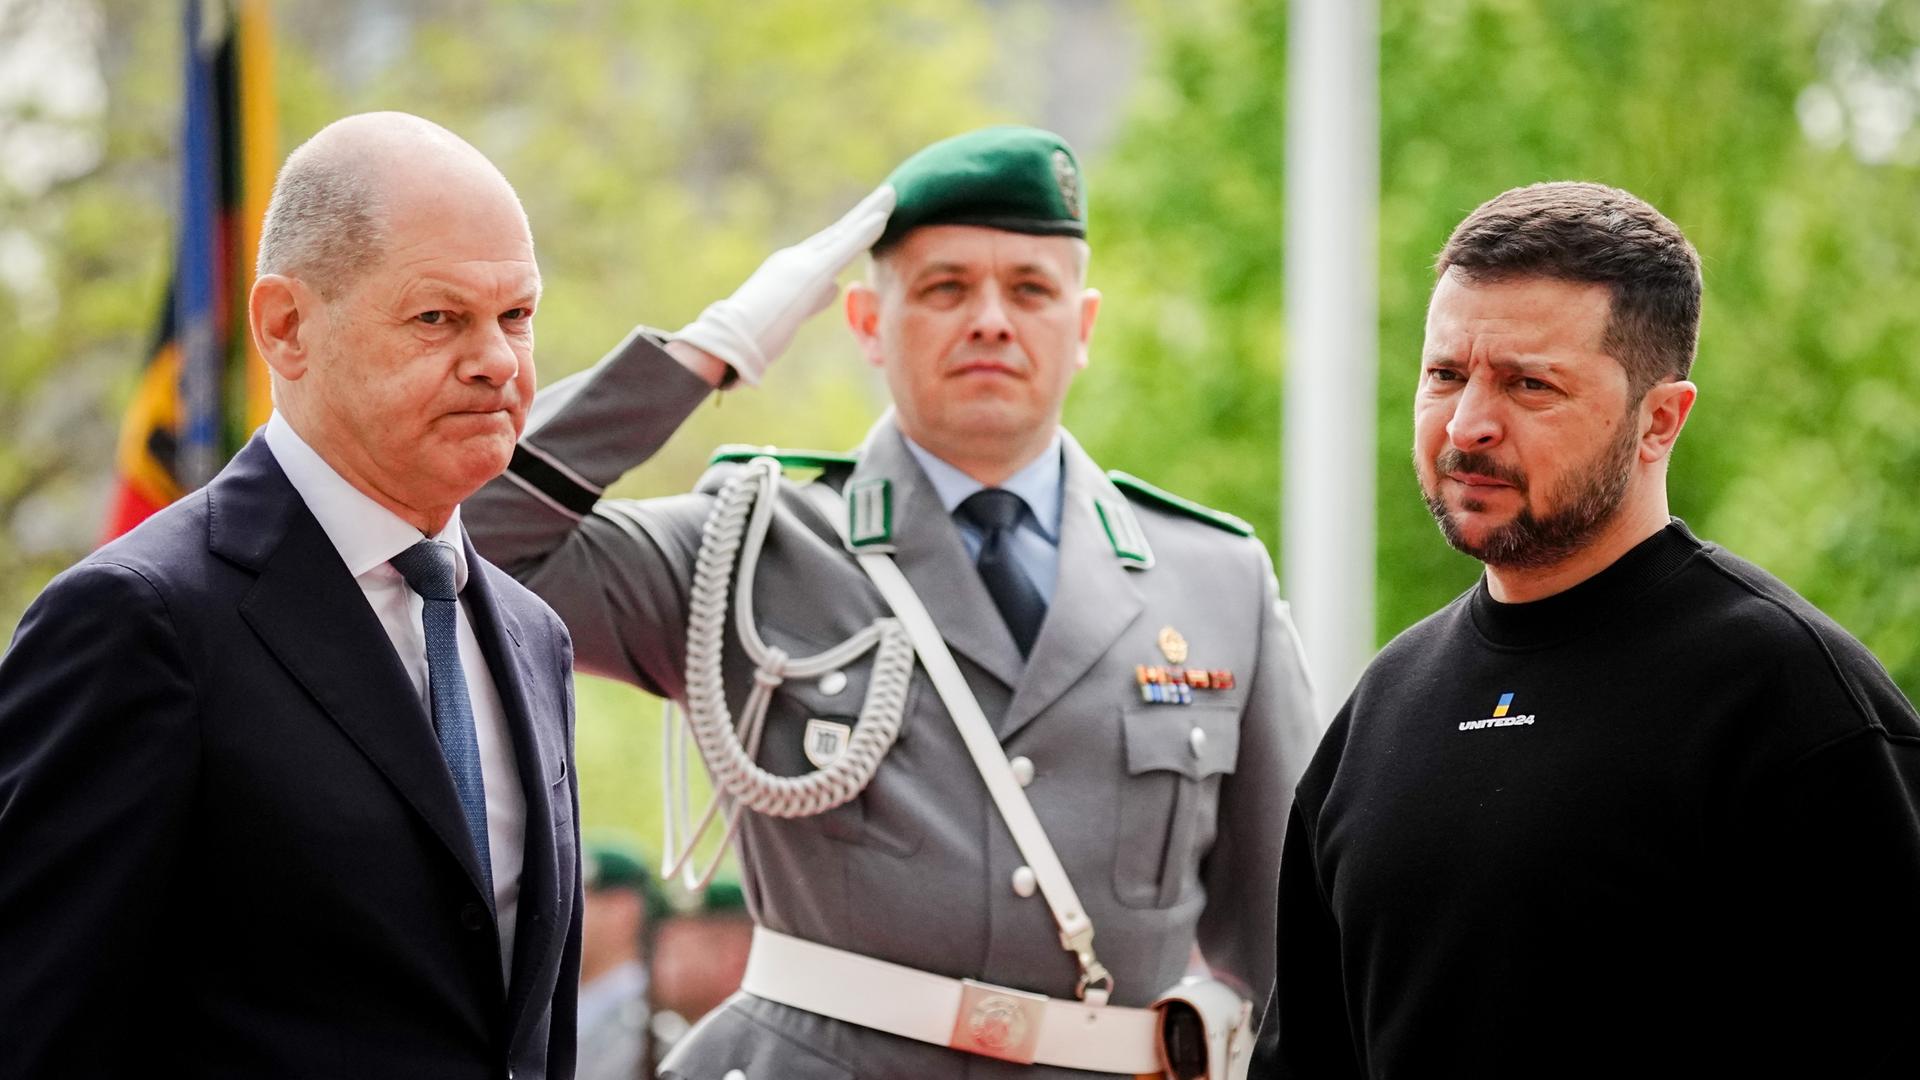 Bundeskanzler Olaf Scholz und Wolodymyr Selenskyj, Präsident der Ukraine beim Fahnenappell mit einem Bundeswehrsoldaten